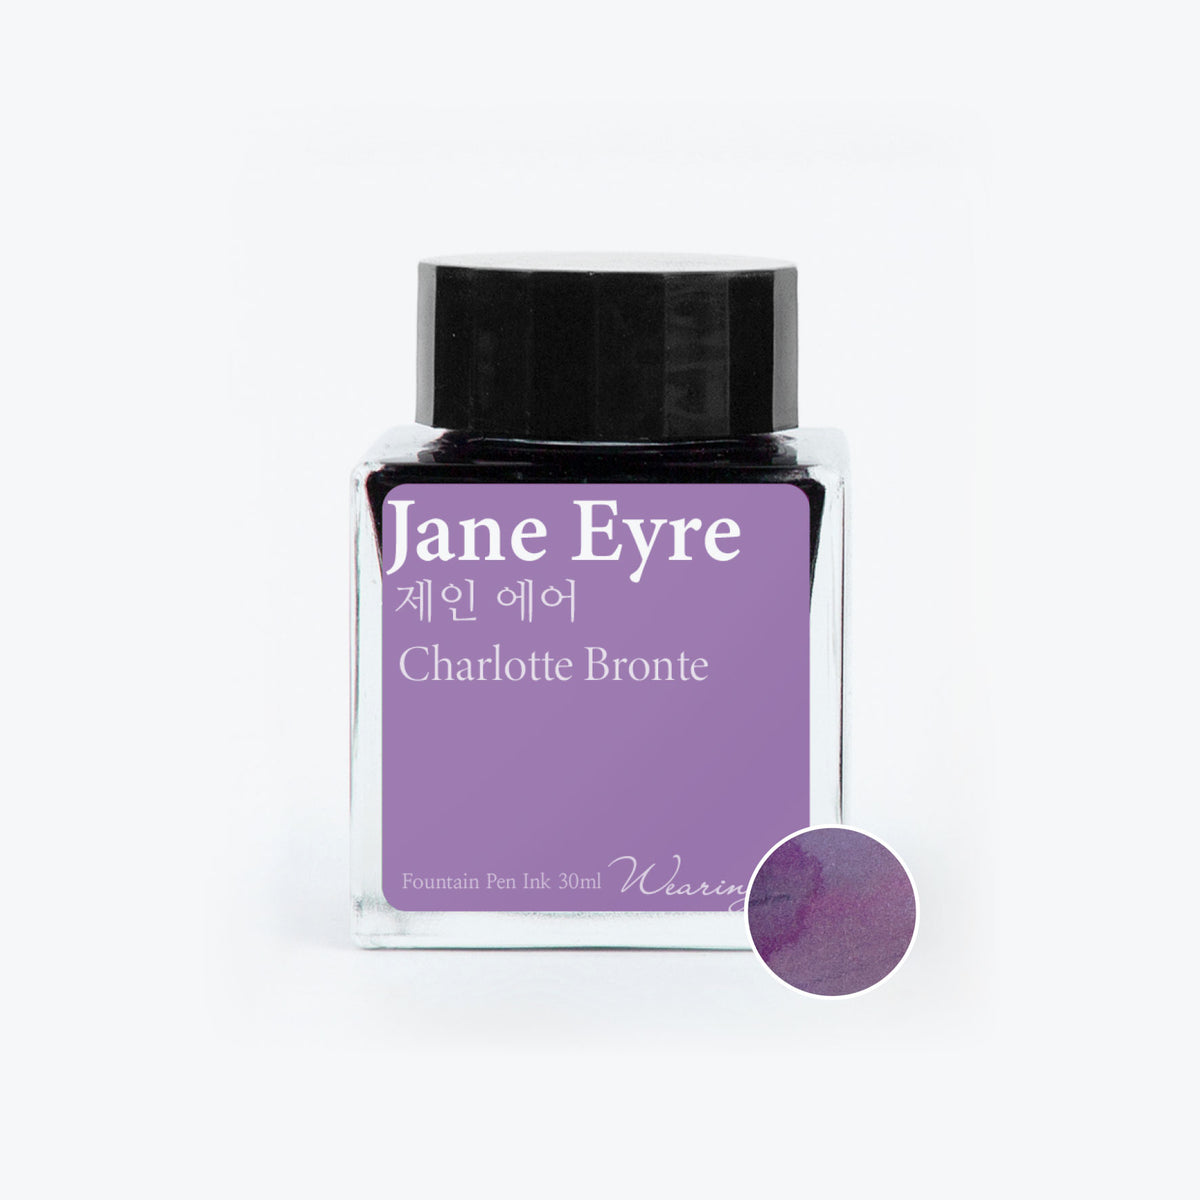 Wearingeul - Fountain Pen Ink - Jane Eyre